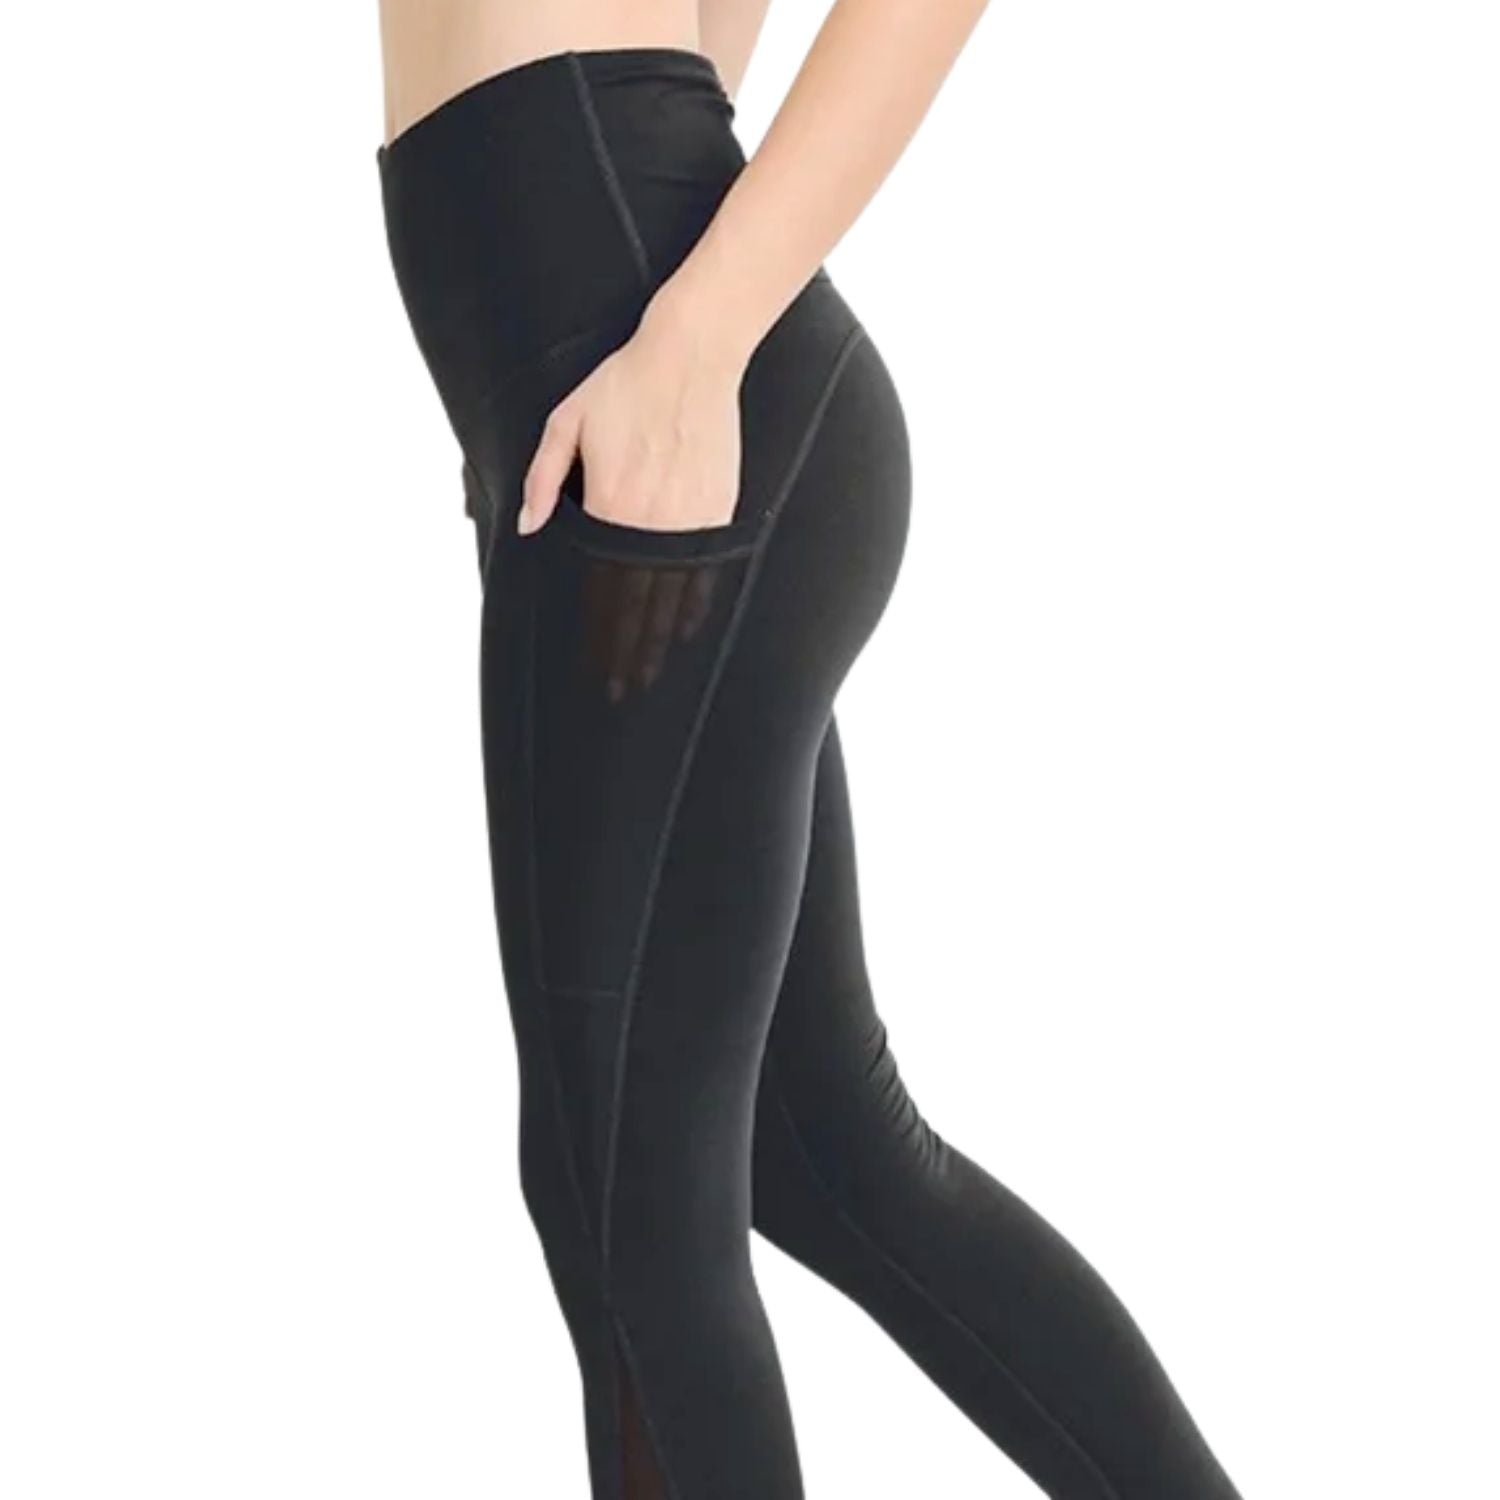 High-waist Splice Mesh Pocket Full Leggings - Black / 2Tone Grey